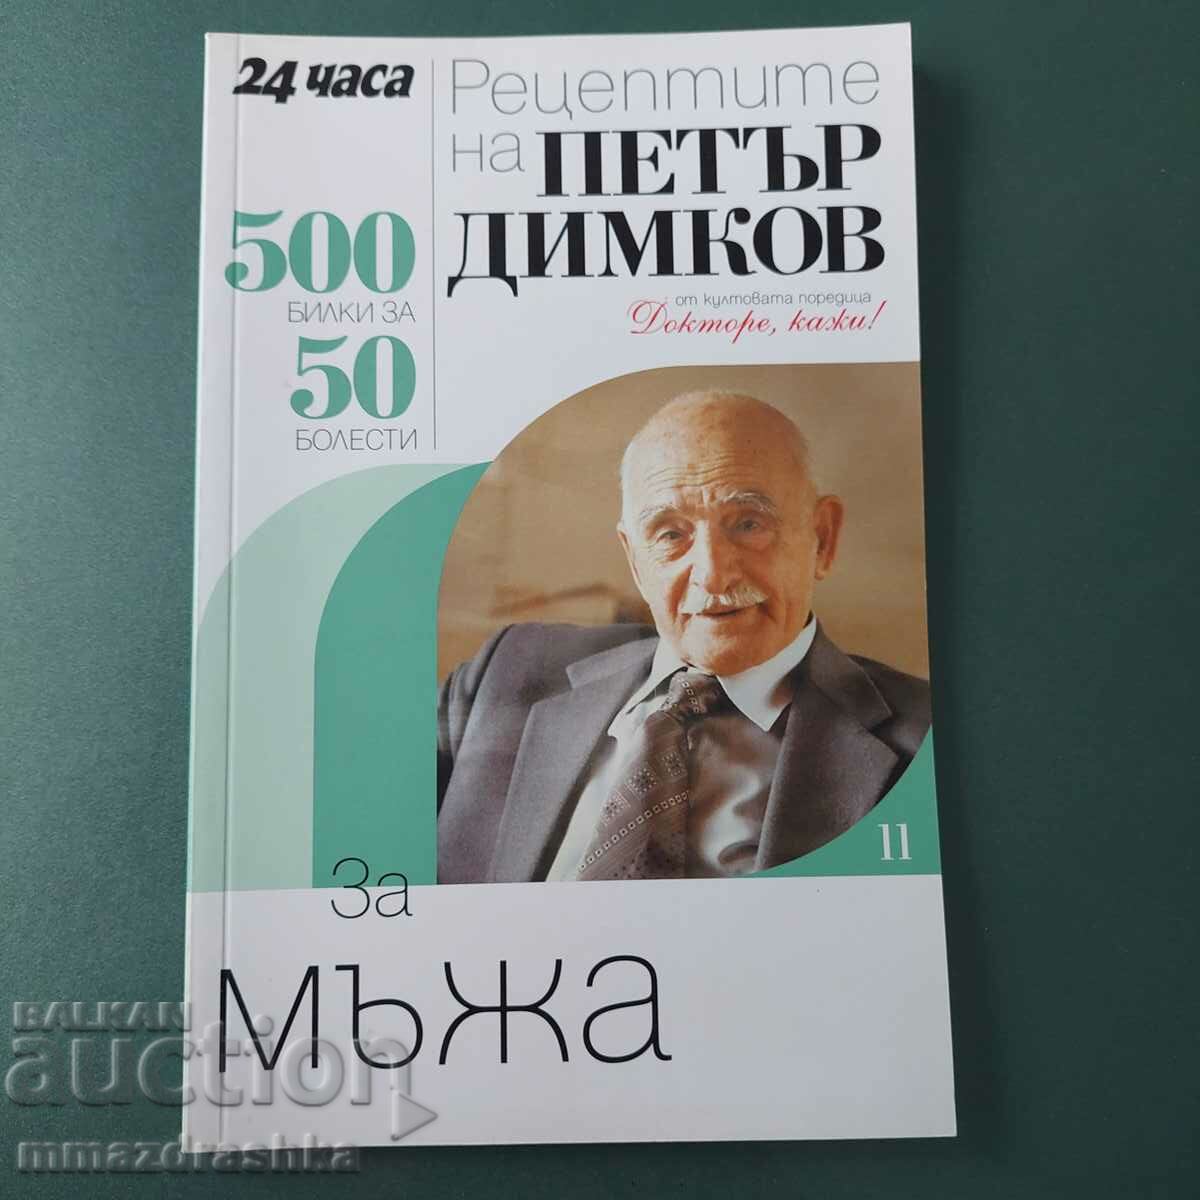 500 συνταγές για άνδρες, Petar Dimkov